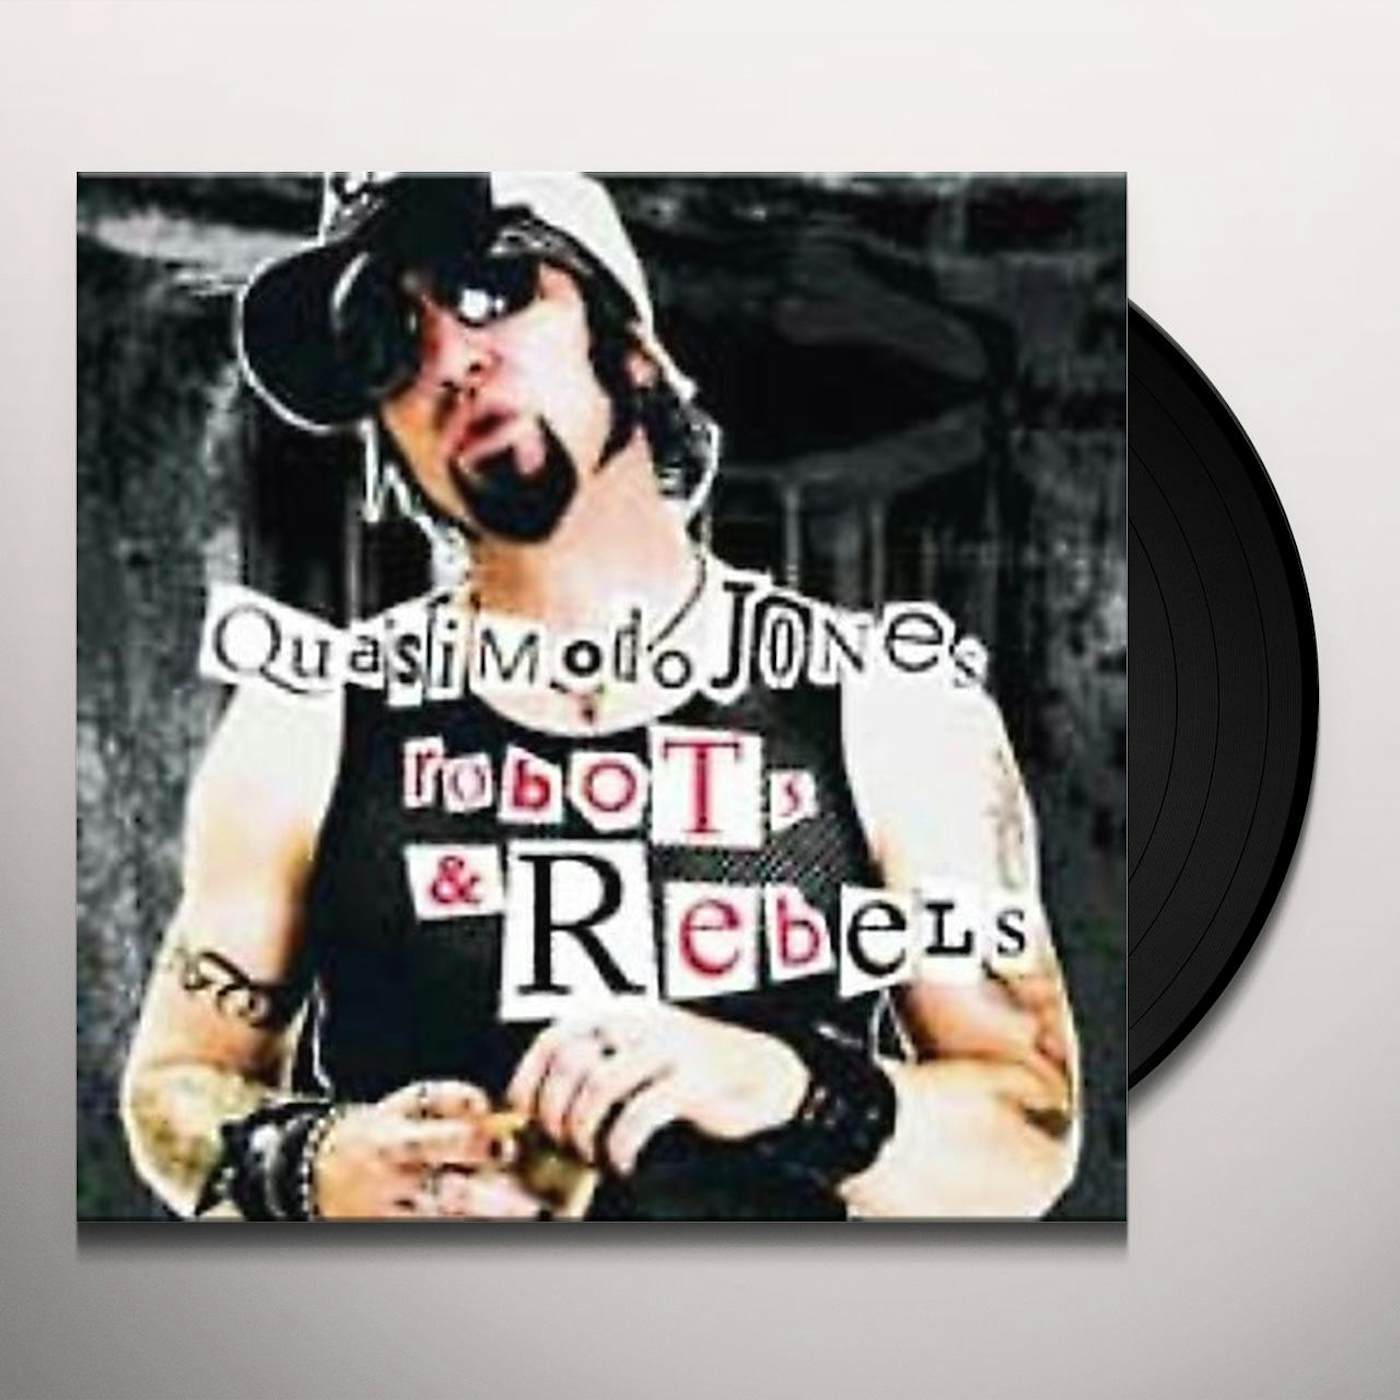 Quasimodo Jones Robots And Rebels Vinyl Record